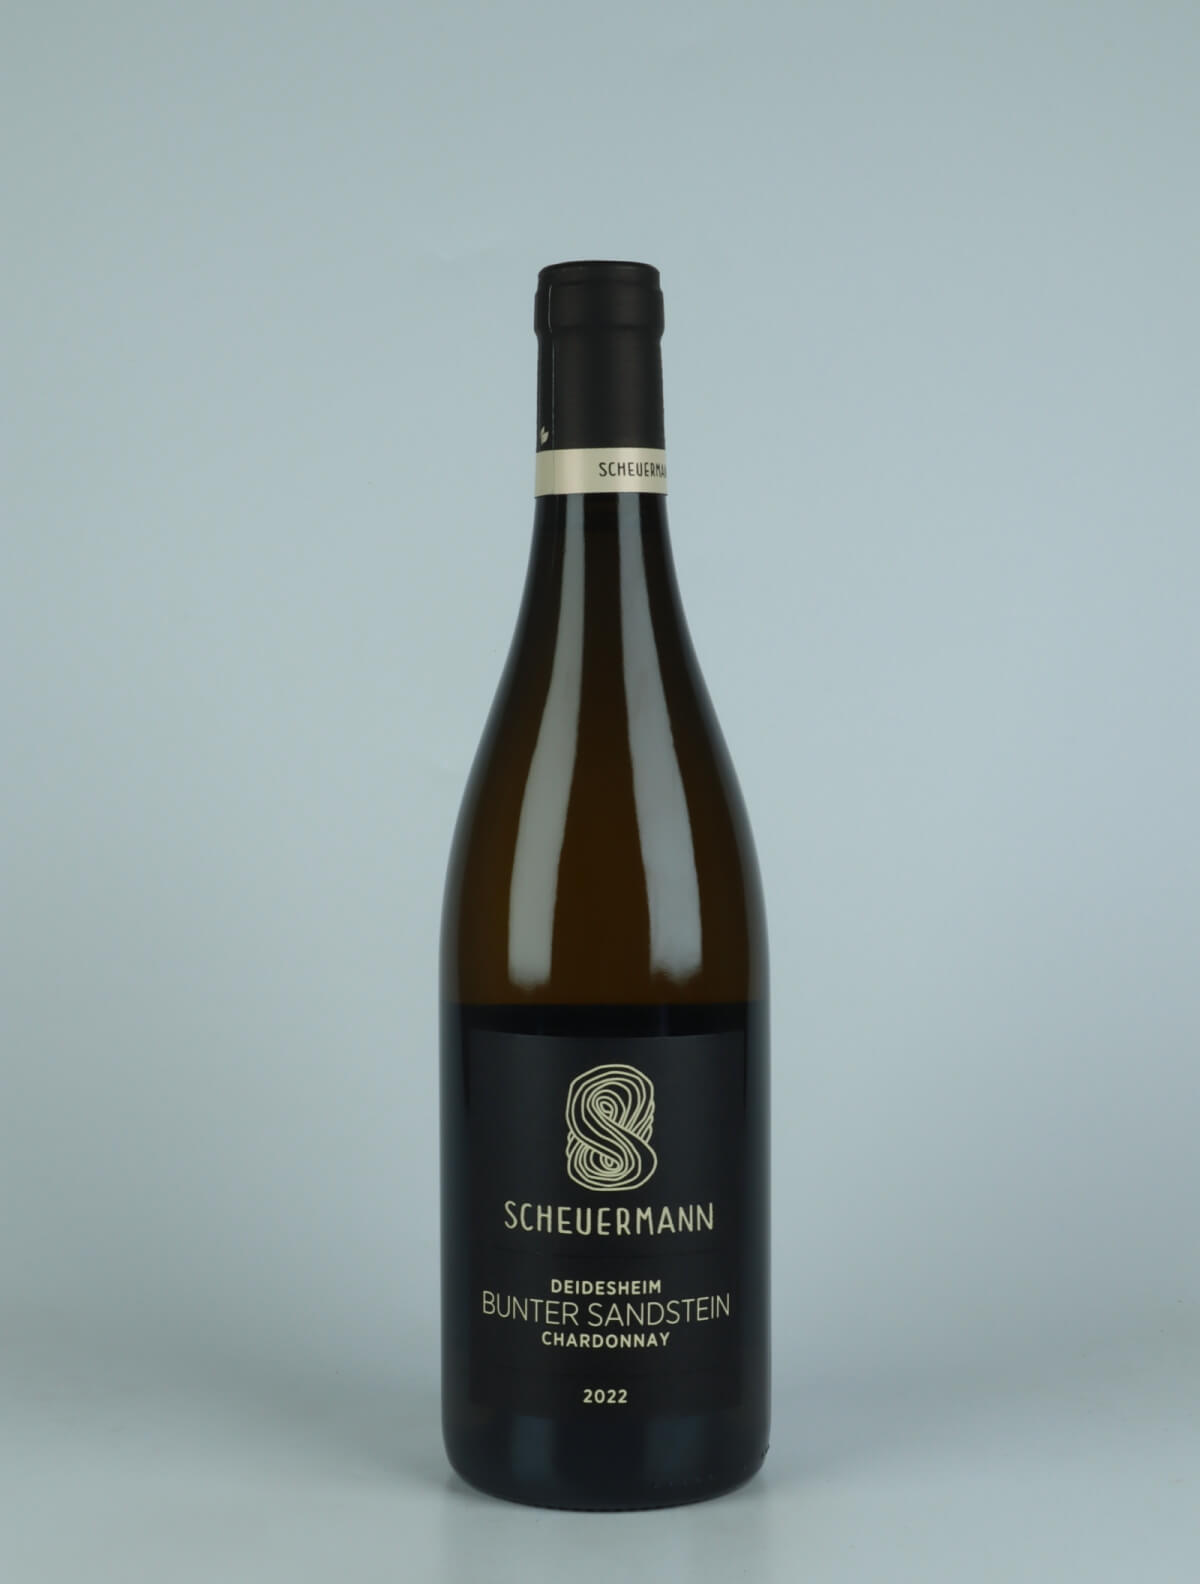 A bottle 2022 Chardonnay Bunter Sandstein White wine from Weingut Scheuermann, Pfalz in Germany